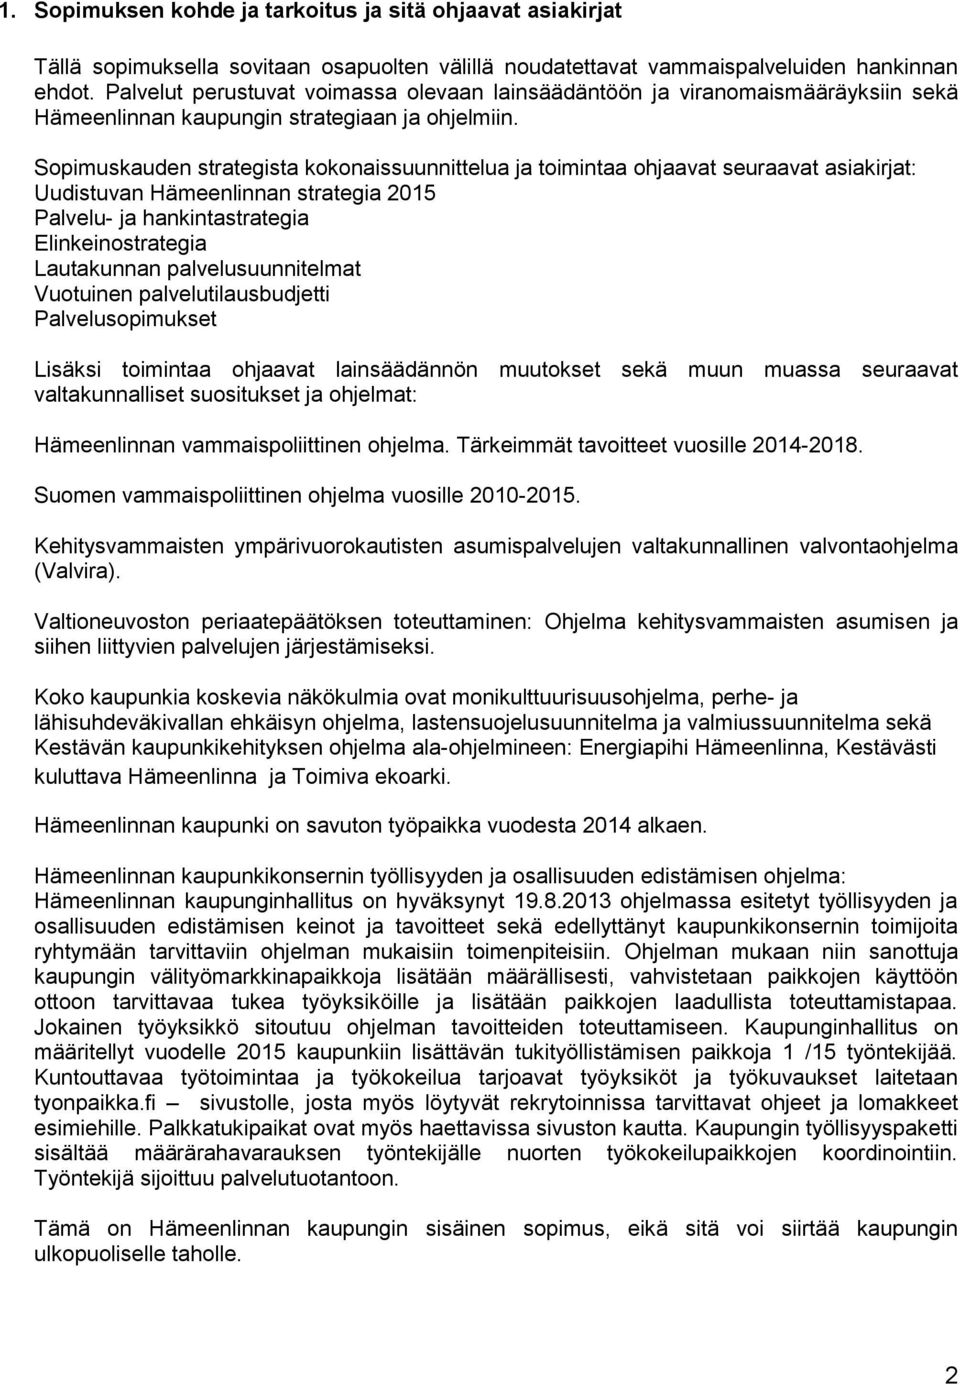 Sopimuskauden strategista kokonaissuunnittelua ja toimintaa ohjaavat seuraavat asiakirjat: Uudistuvan Hämeenlinnan strategia 2015 Palvelu- ja hankintastrategia Elinkeinostrategia Lautakunnan